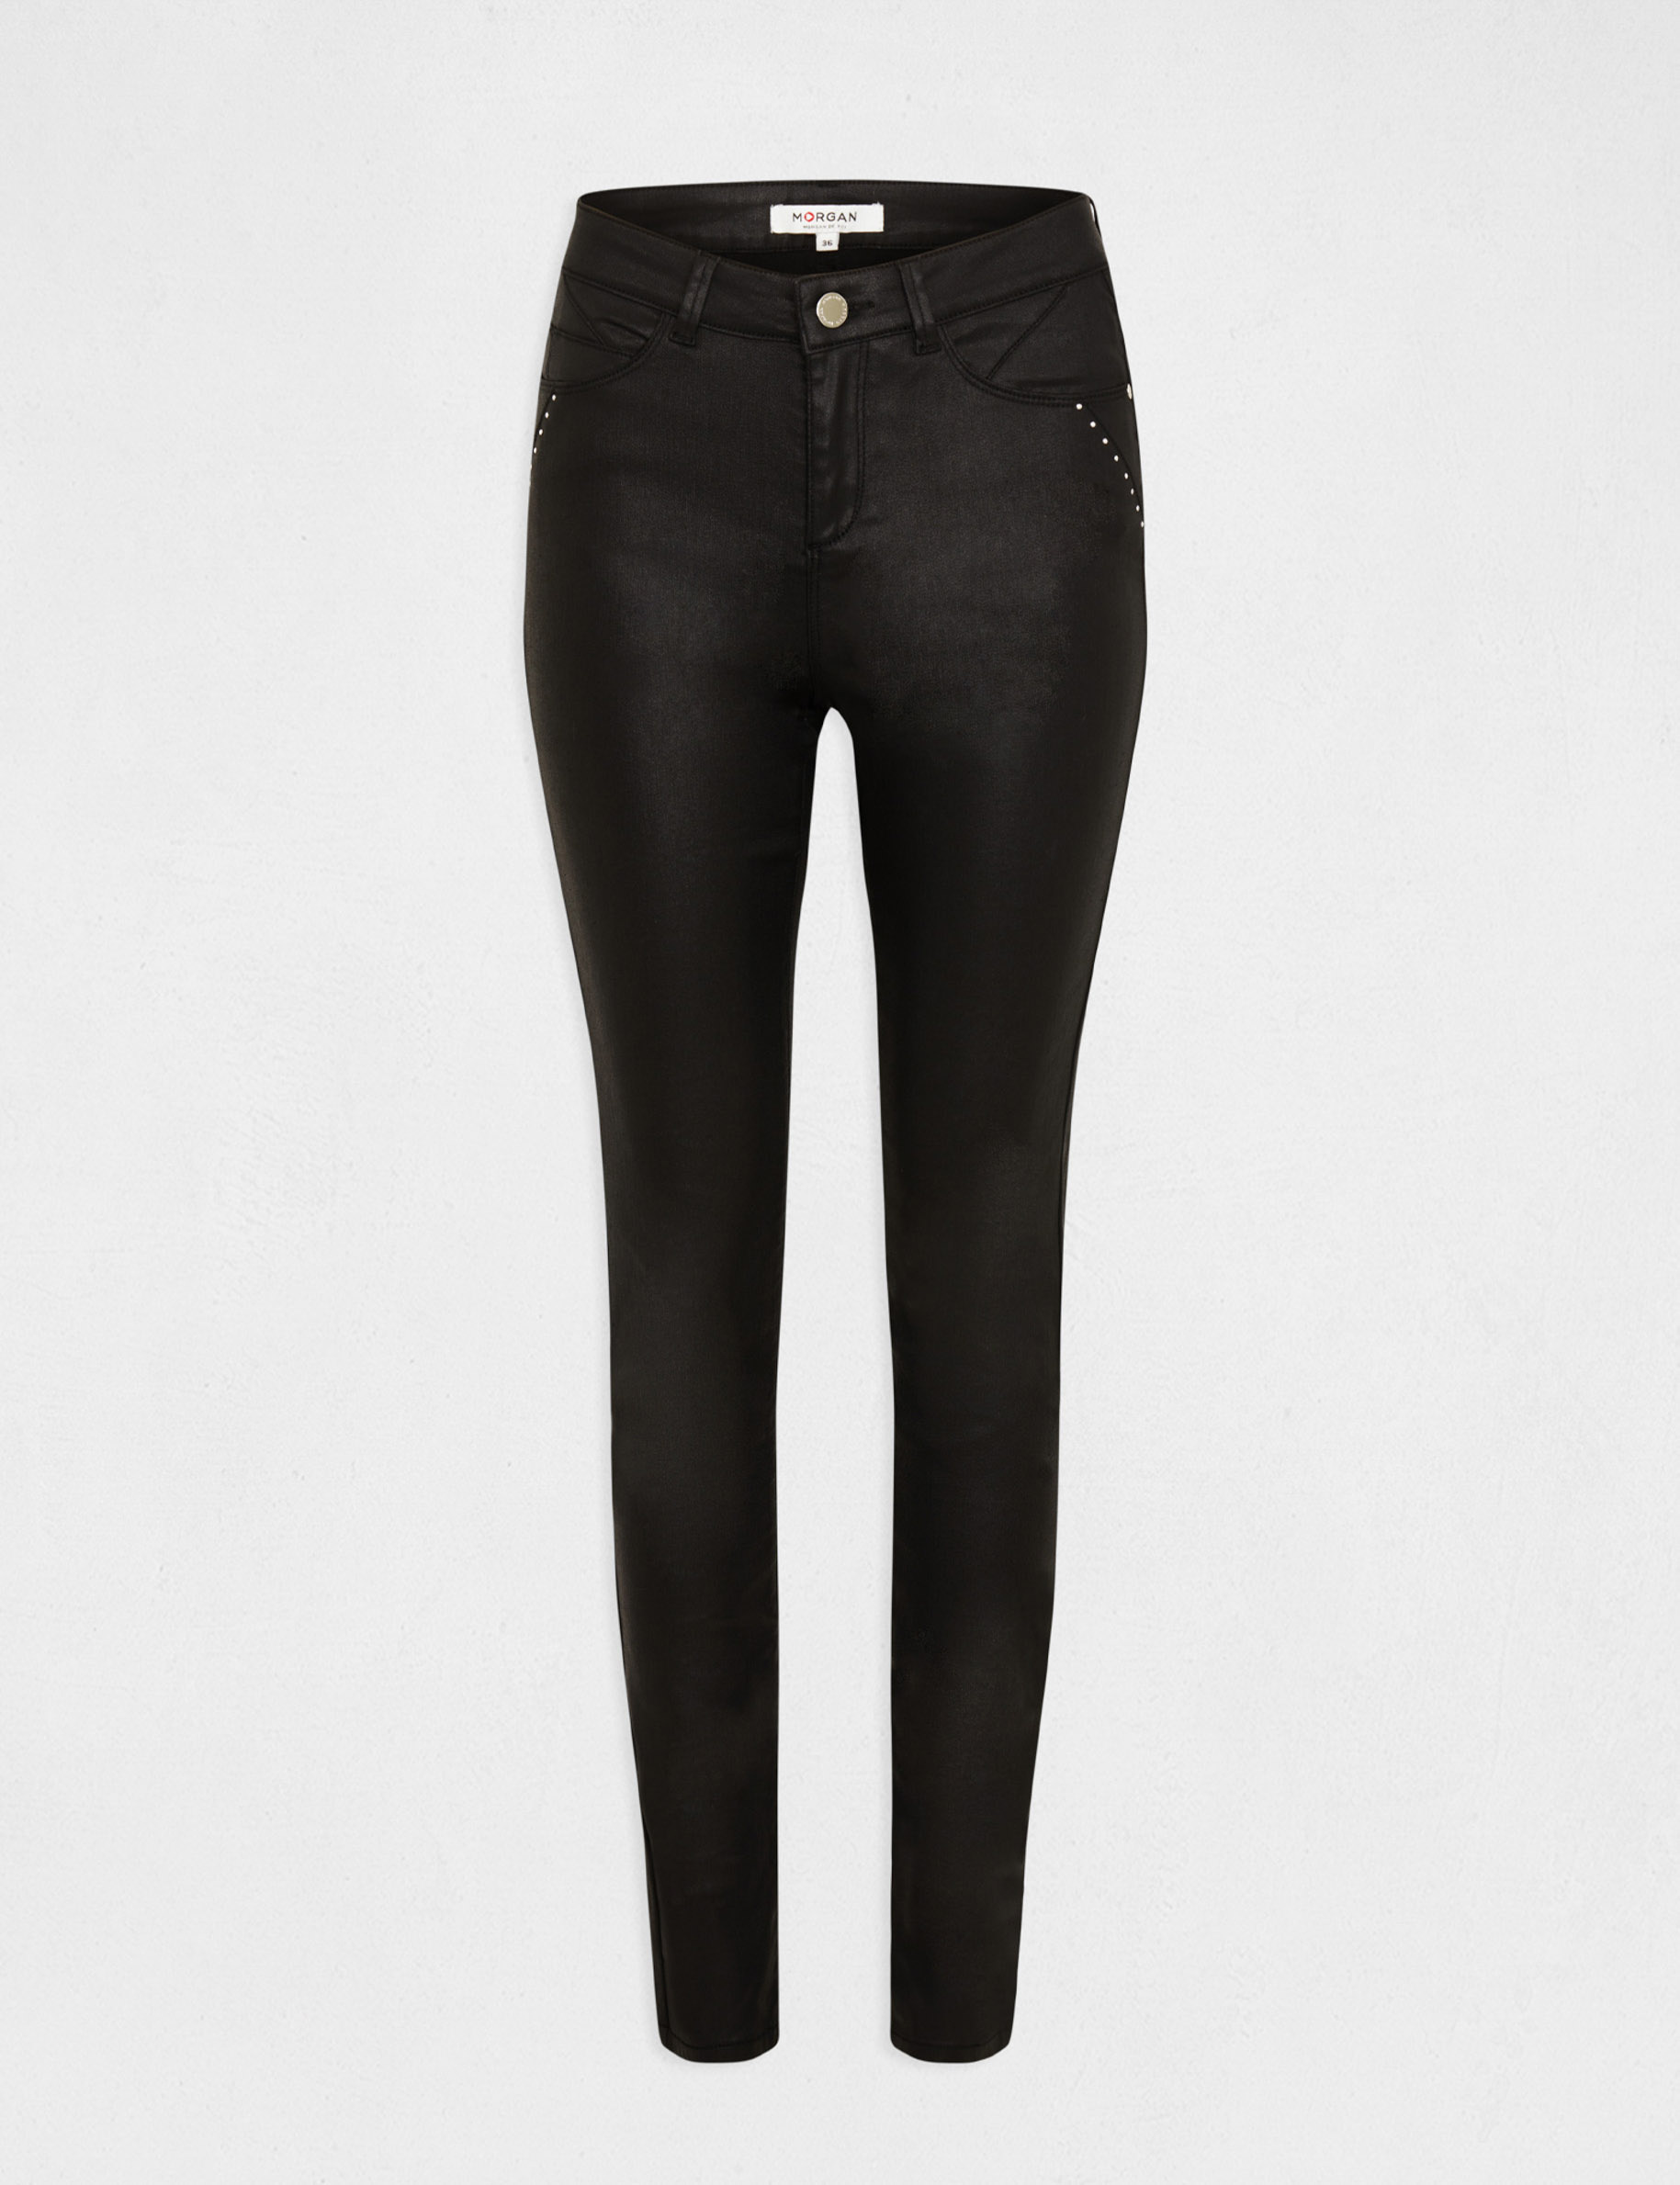 Slim trousers wet effect studs details black ladies' | Morgan